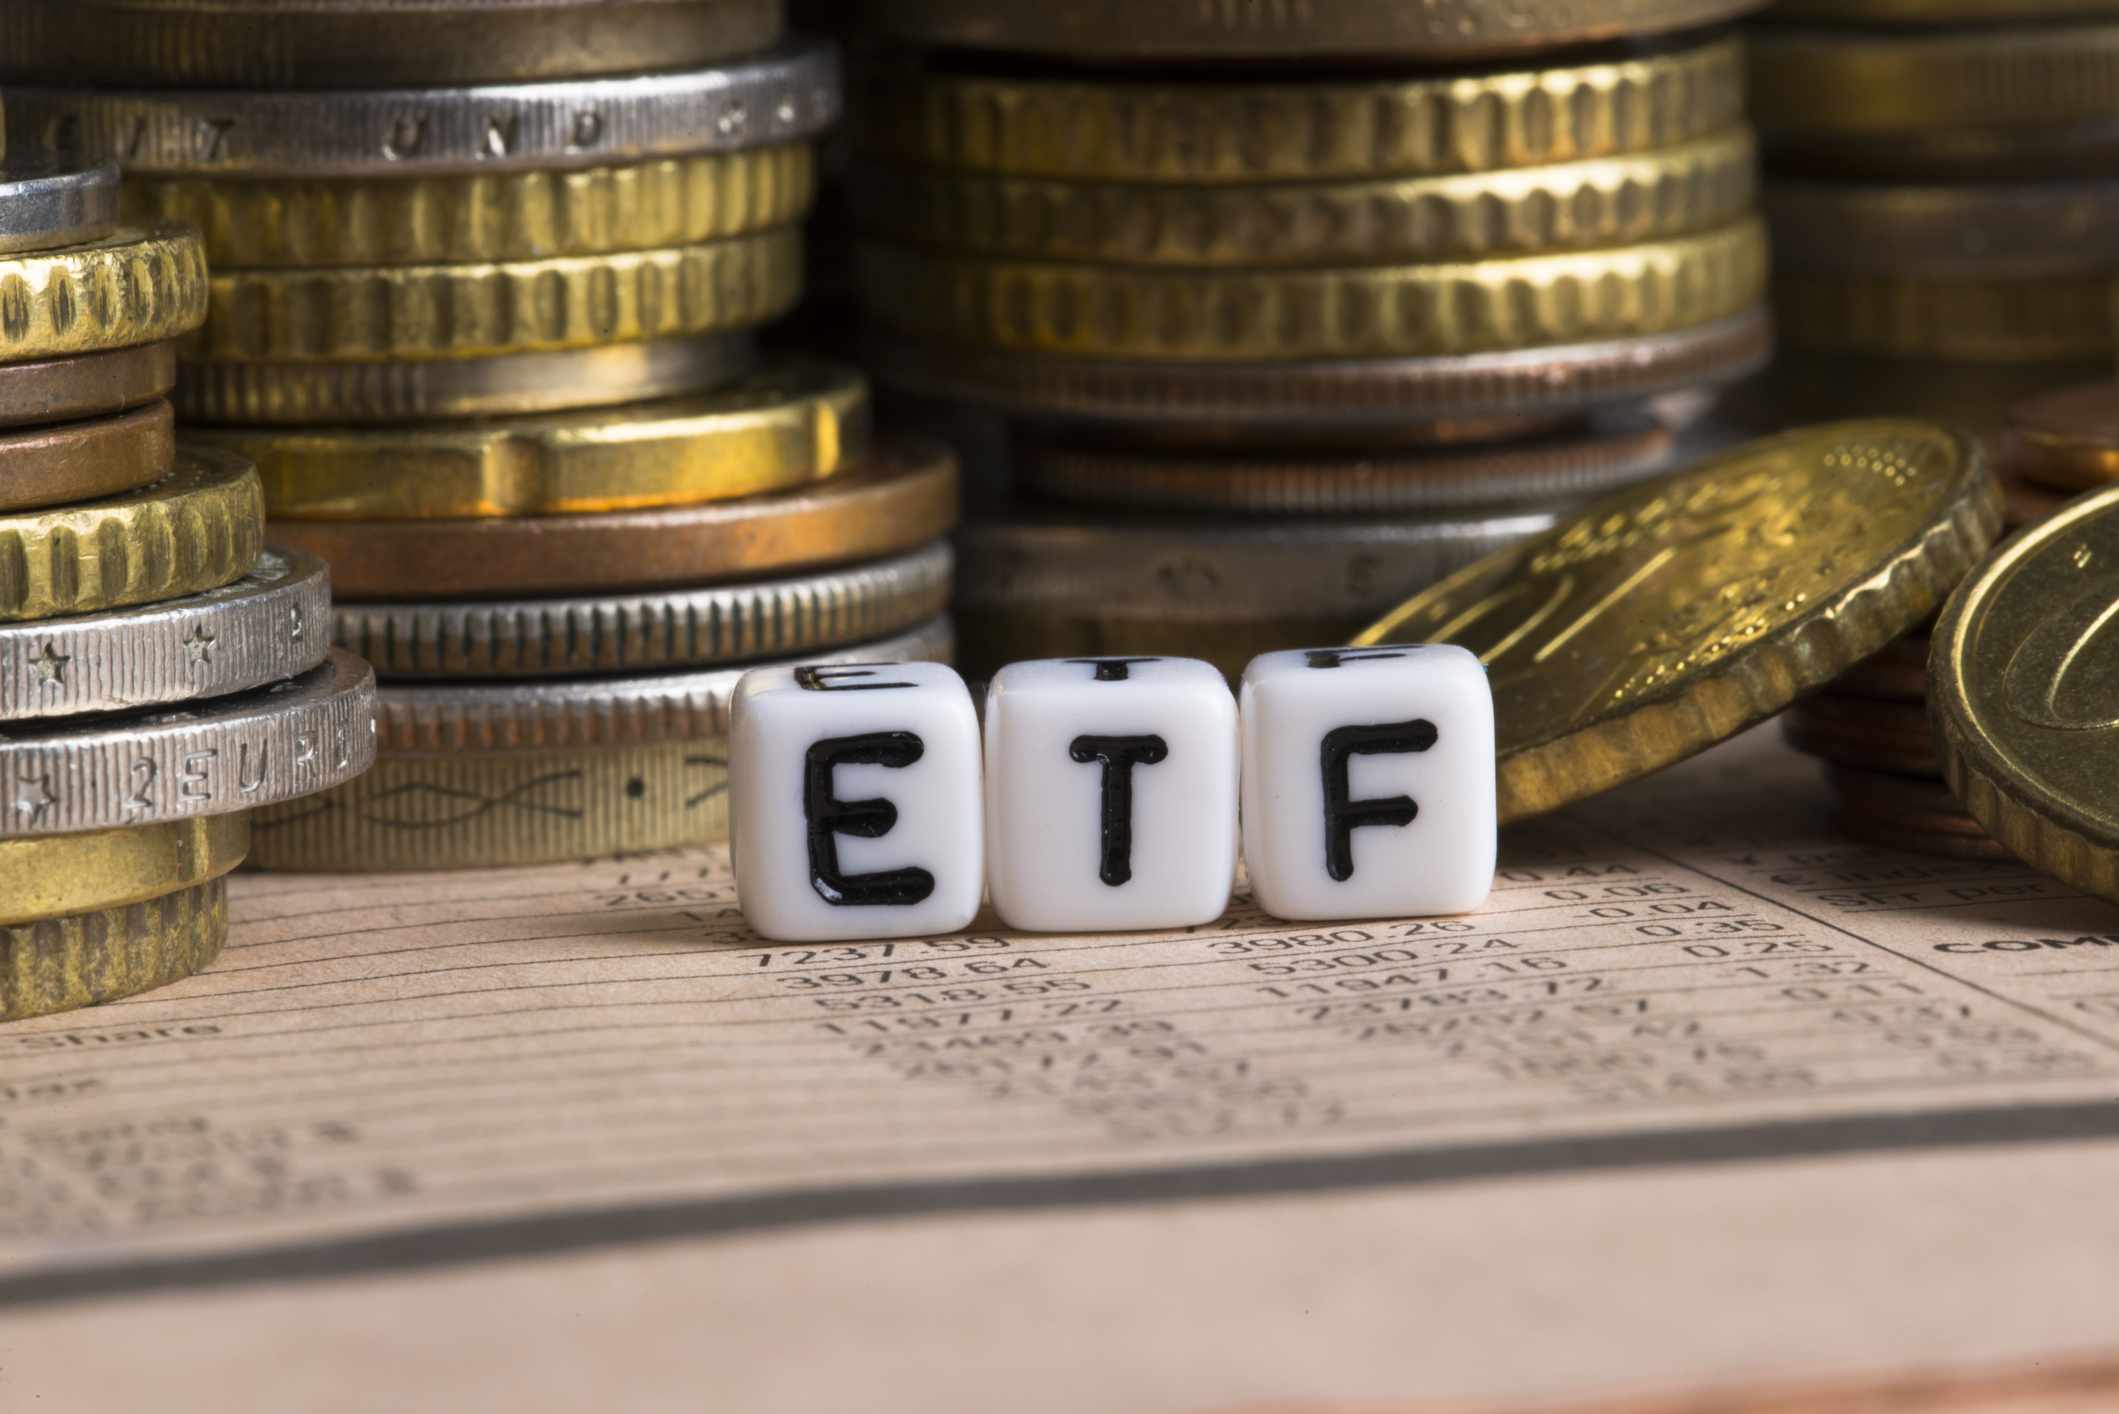 Как рассчитать доходность etf? — вопросы от читателей т—ж